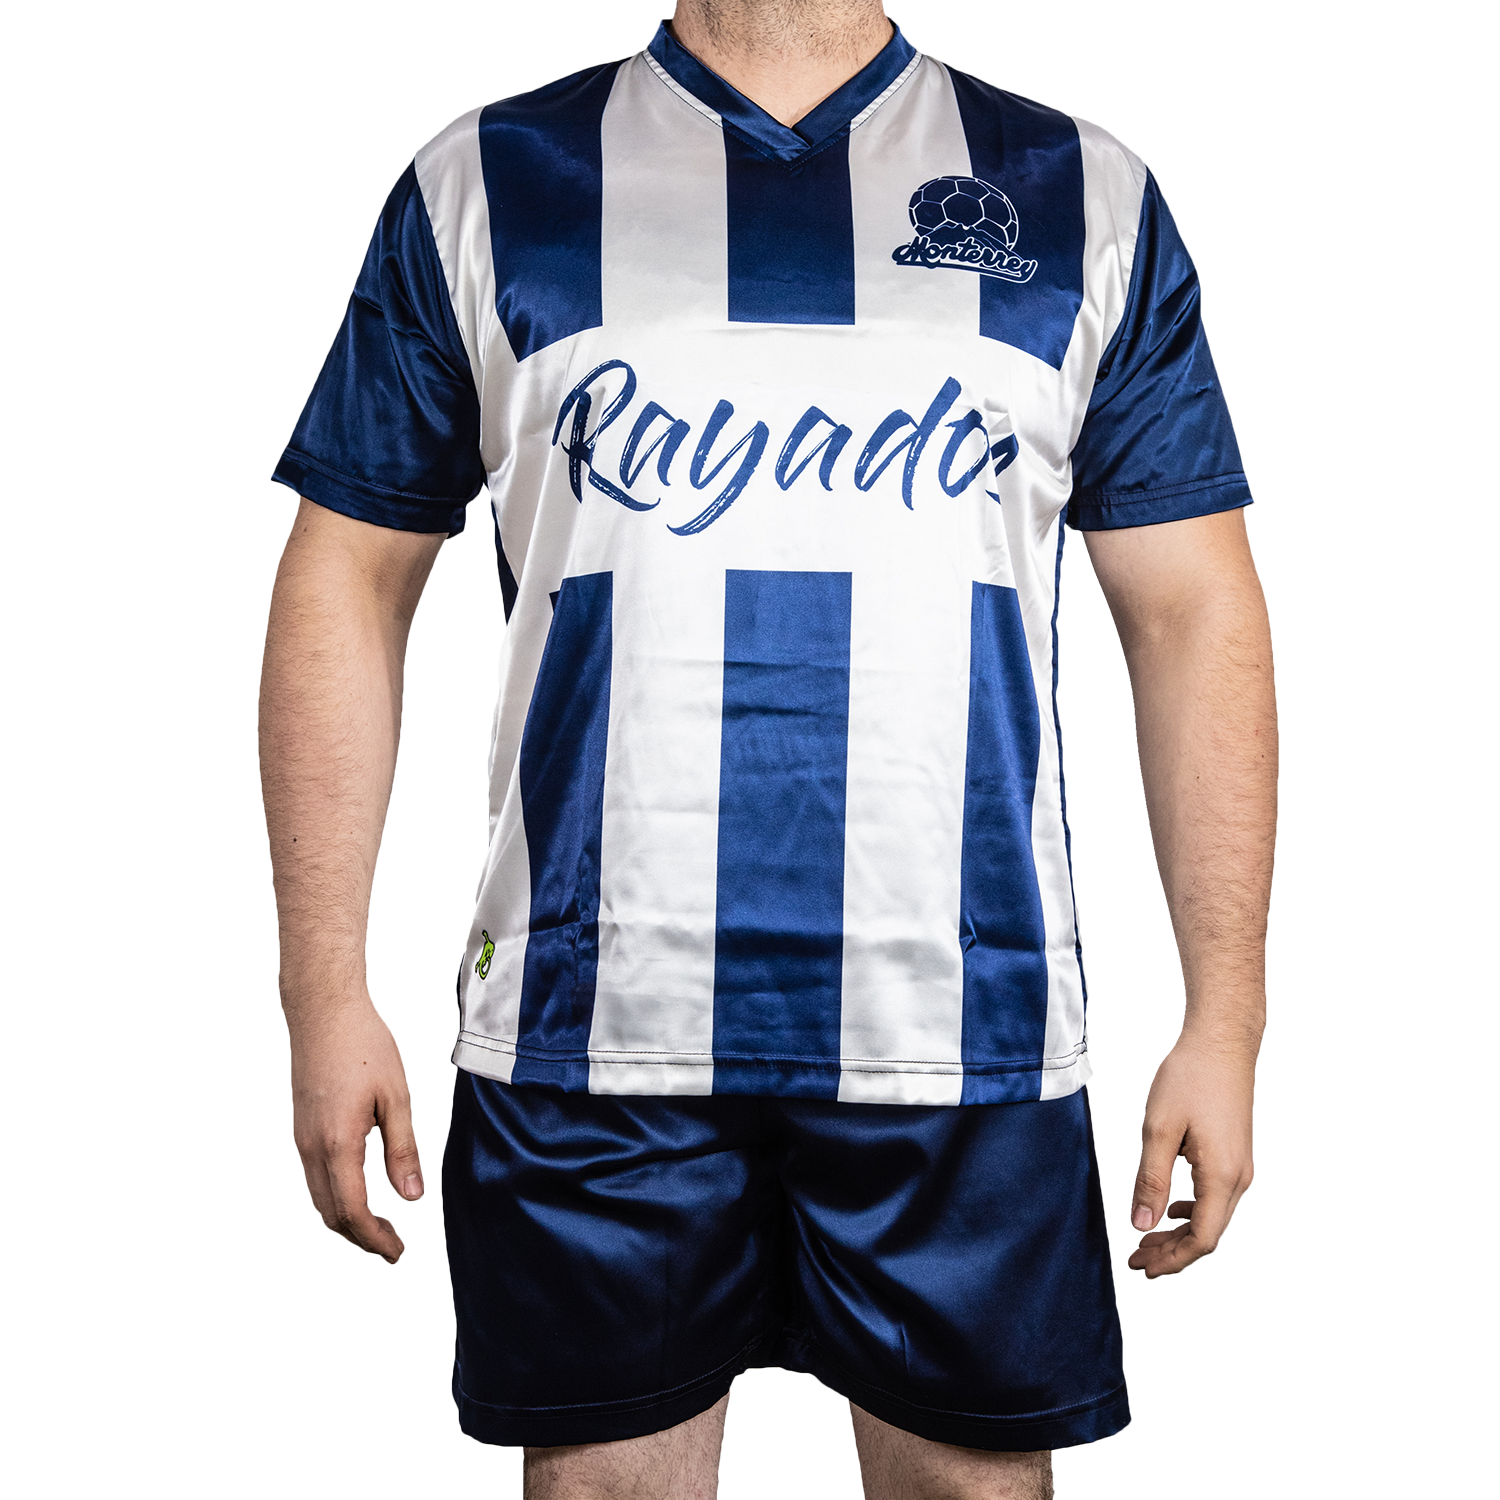 PMX-RAYADOS SoccerPajama 2